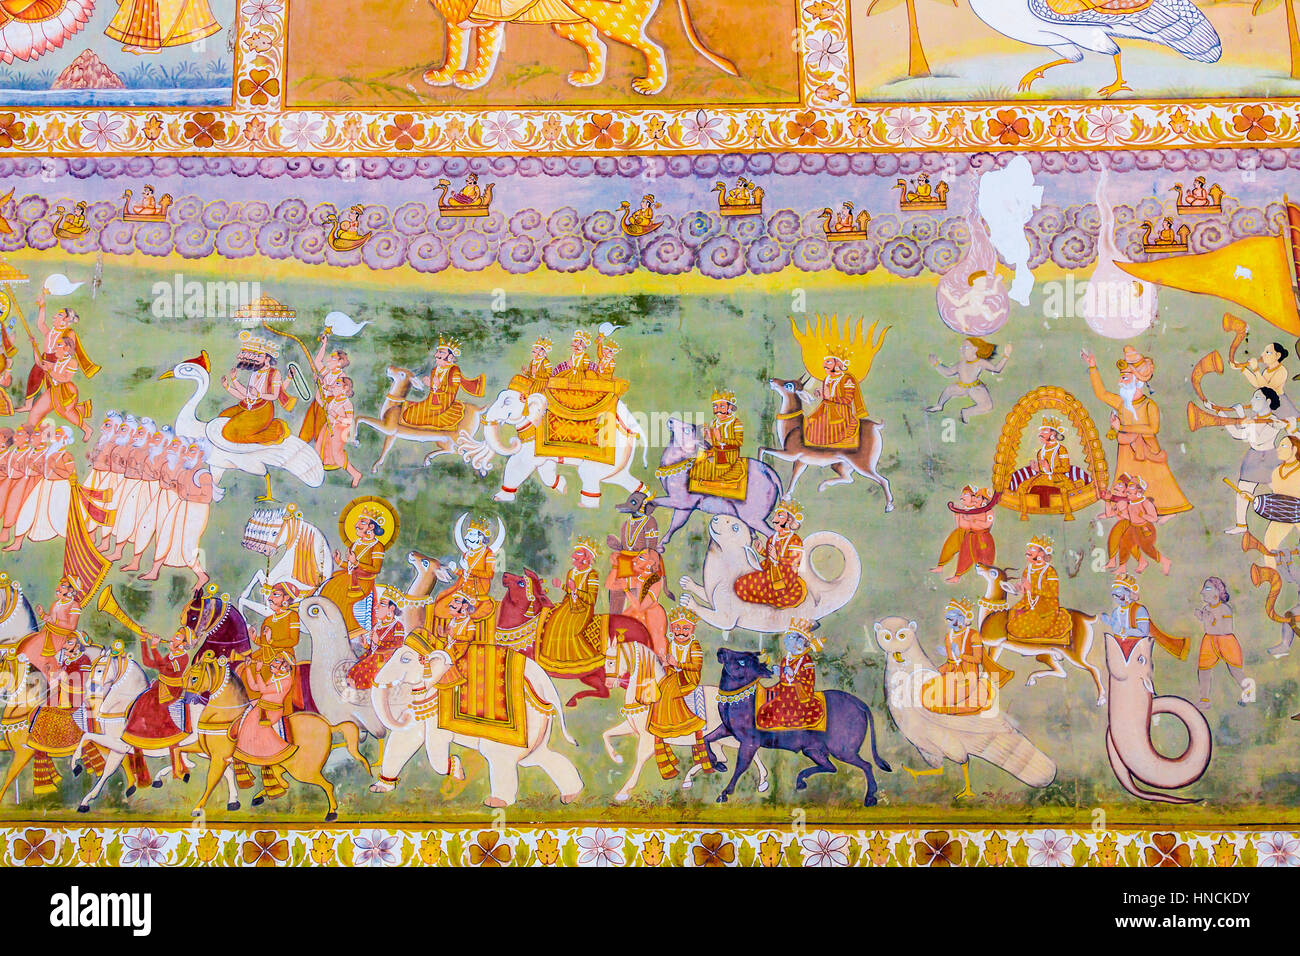 A fresco outside the Mehrangarh Fort depicting gods from Hindu mythology. Stock Photo